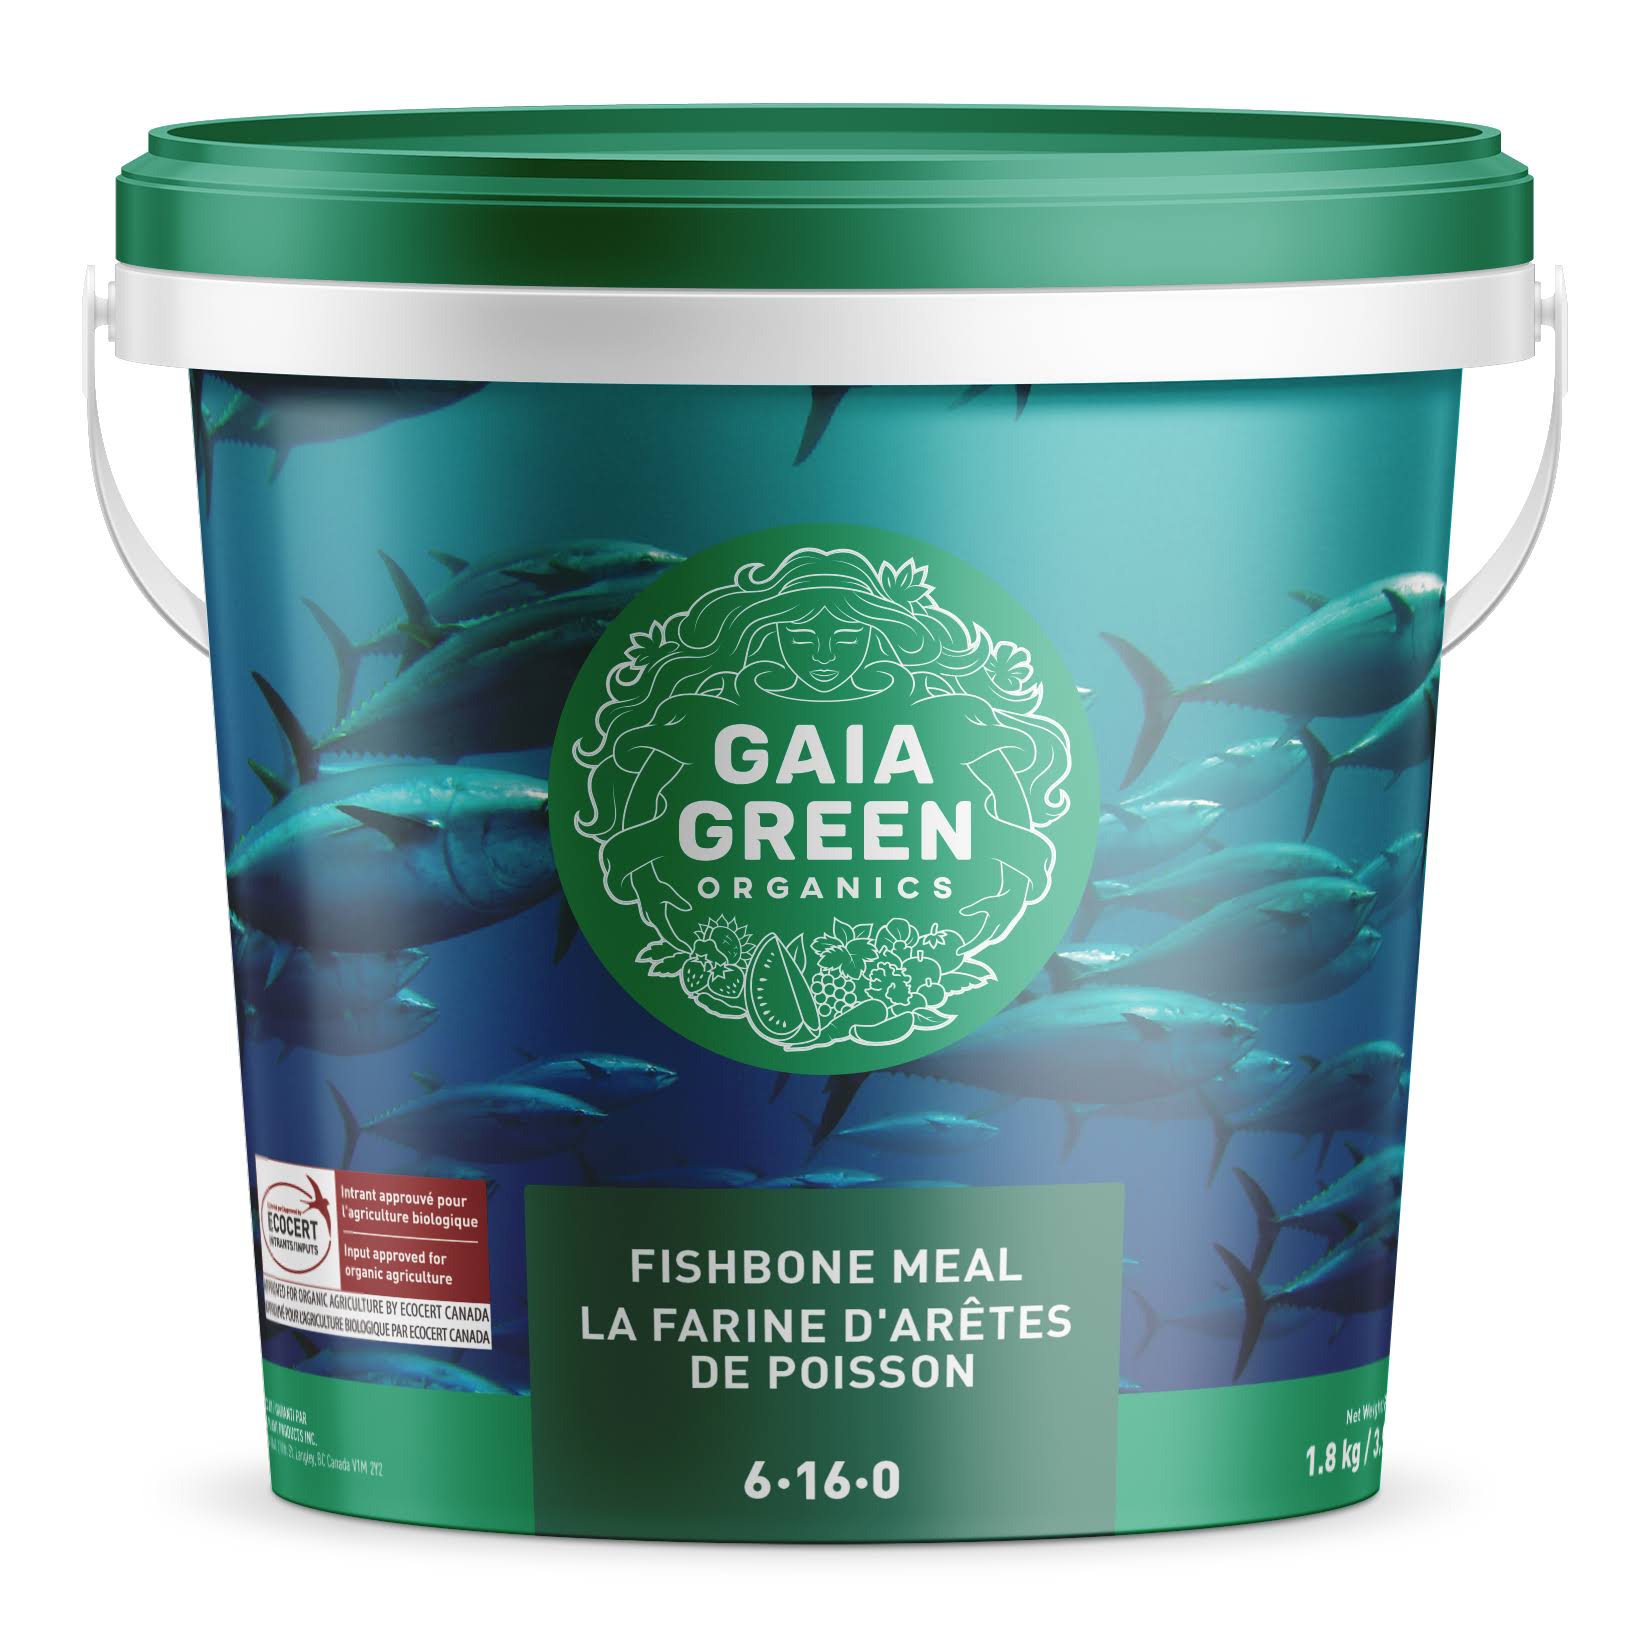 Gaia Green Fishbone 6-18-0, 1.8 kg